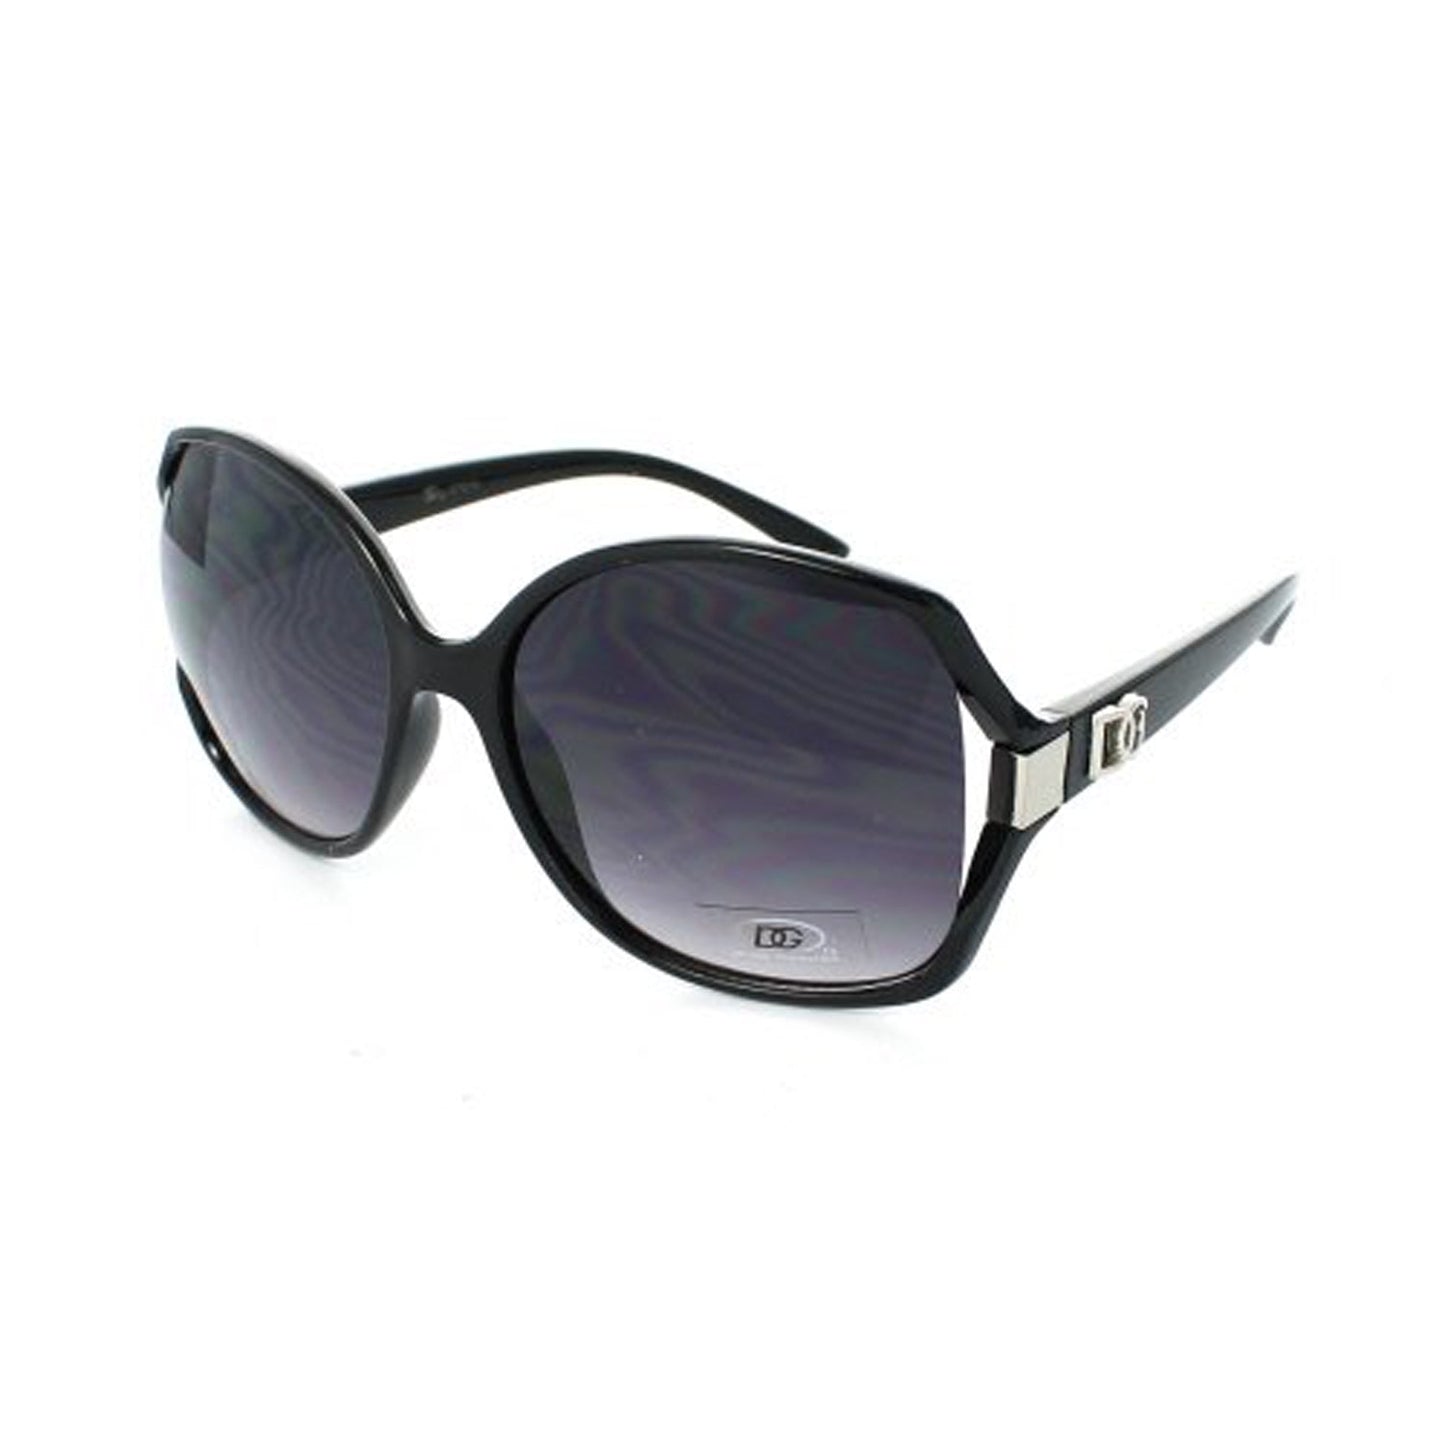 DG Sunglasses Oversized DG27016 - Black